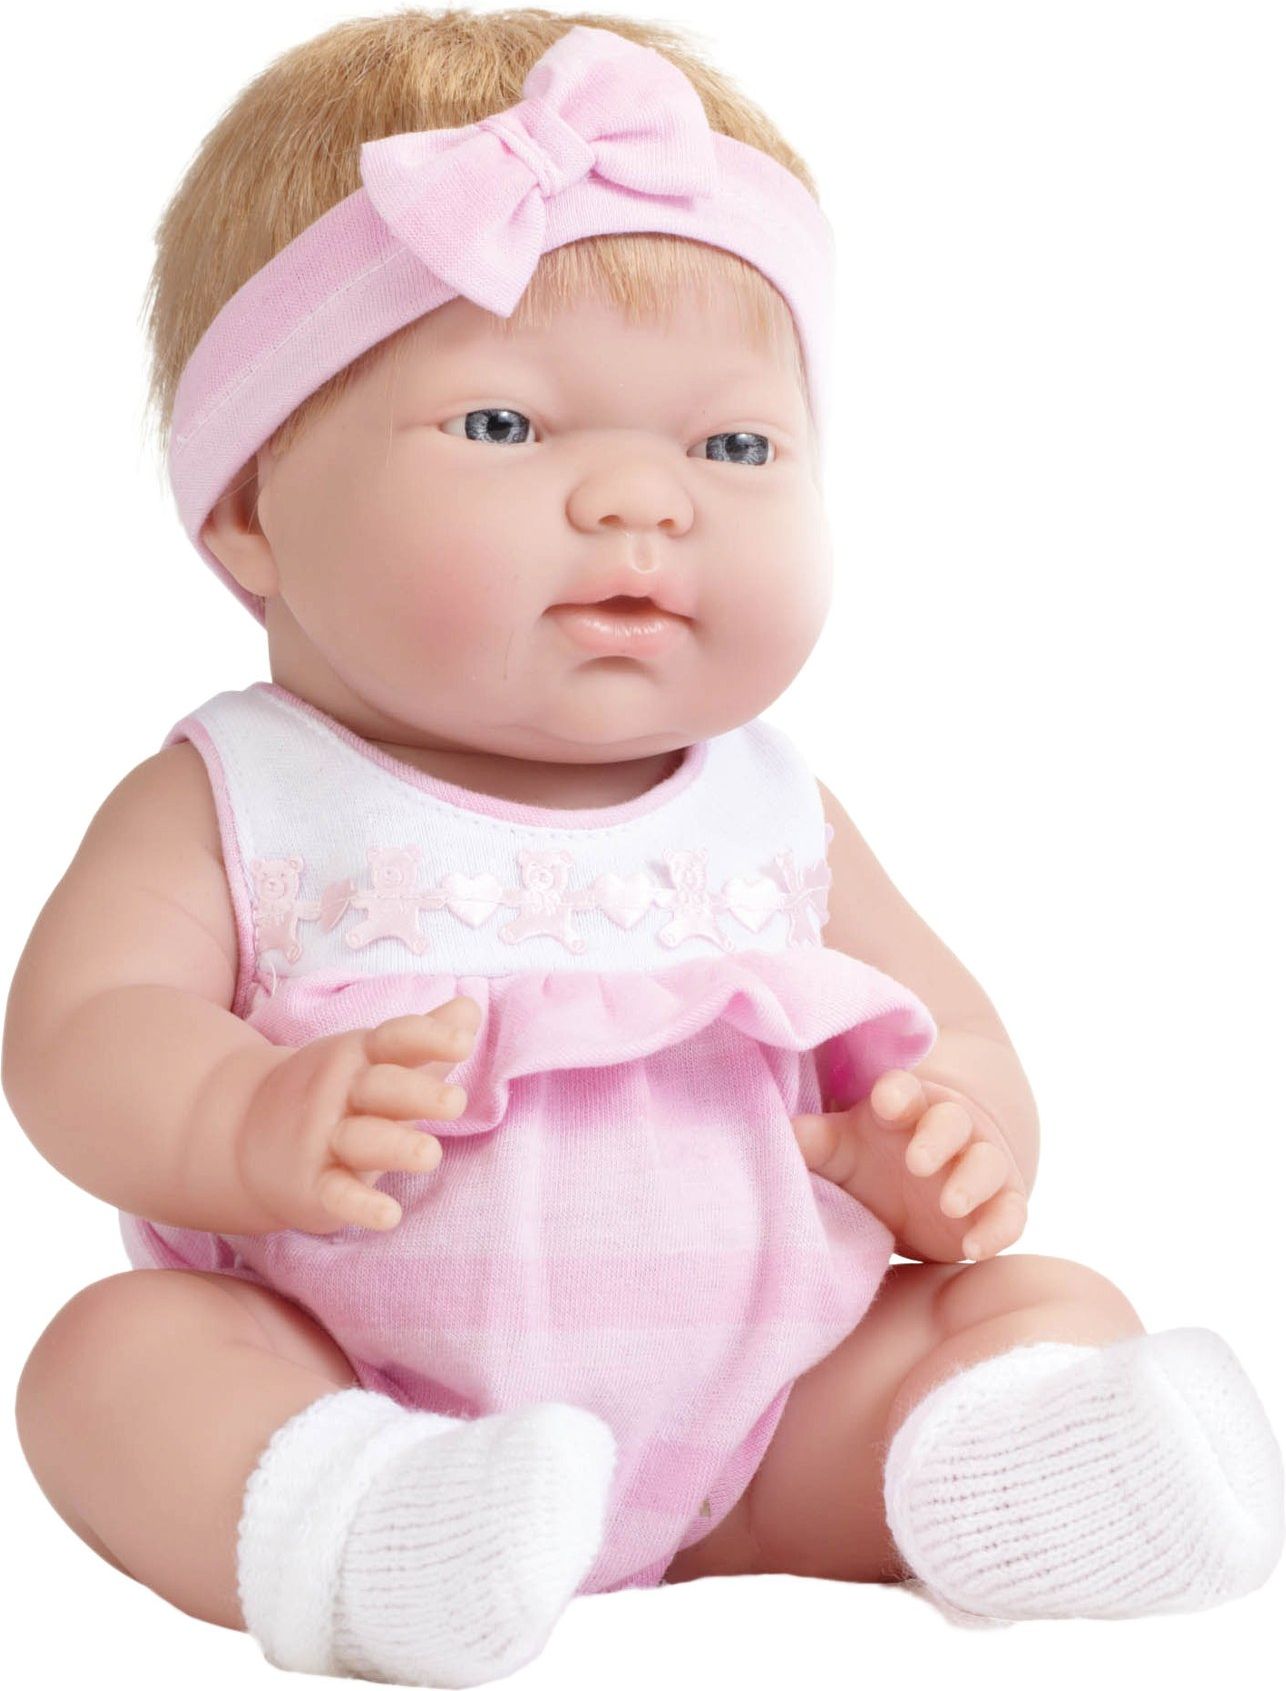 Realistická panenka blonďatá Ani od firmy Berenguer ze Španělska - obrázek 1